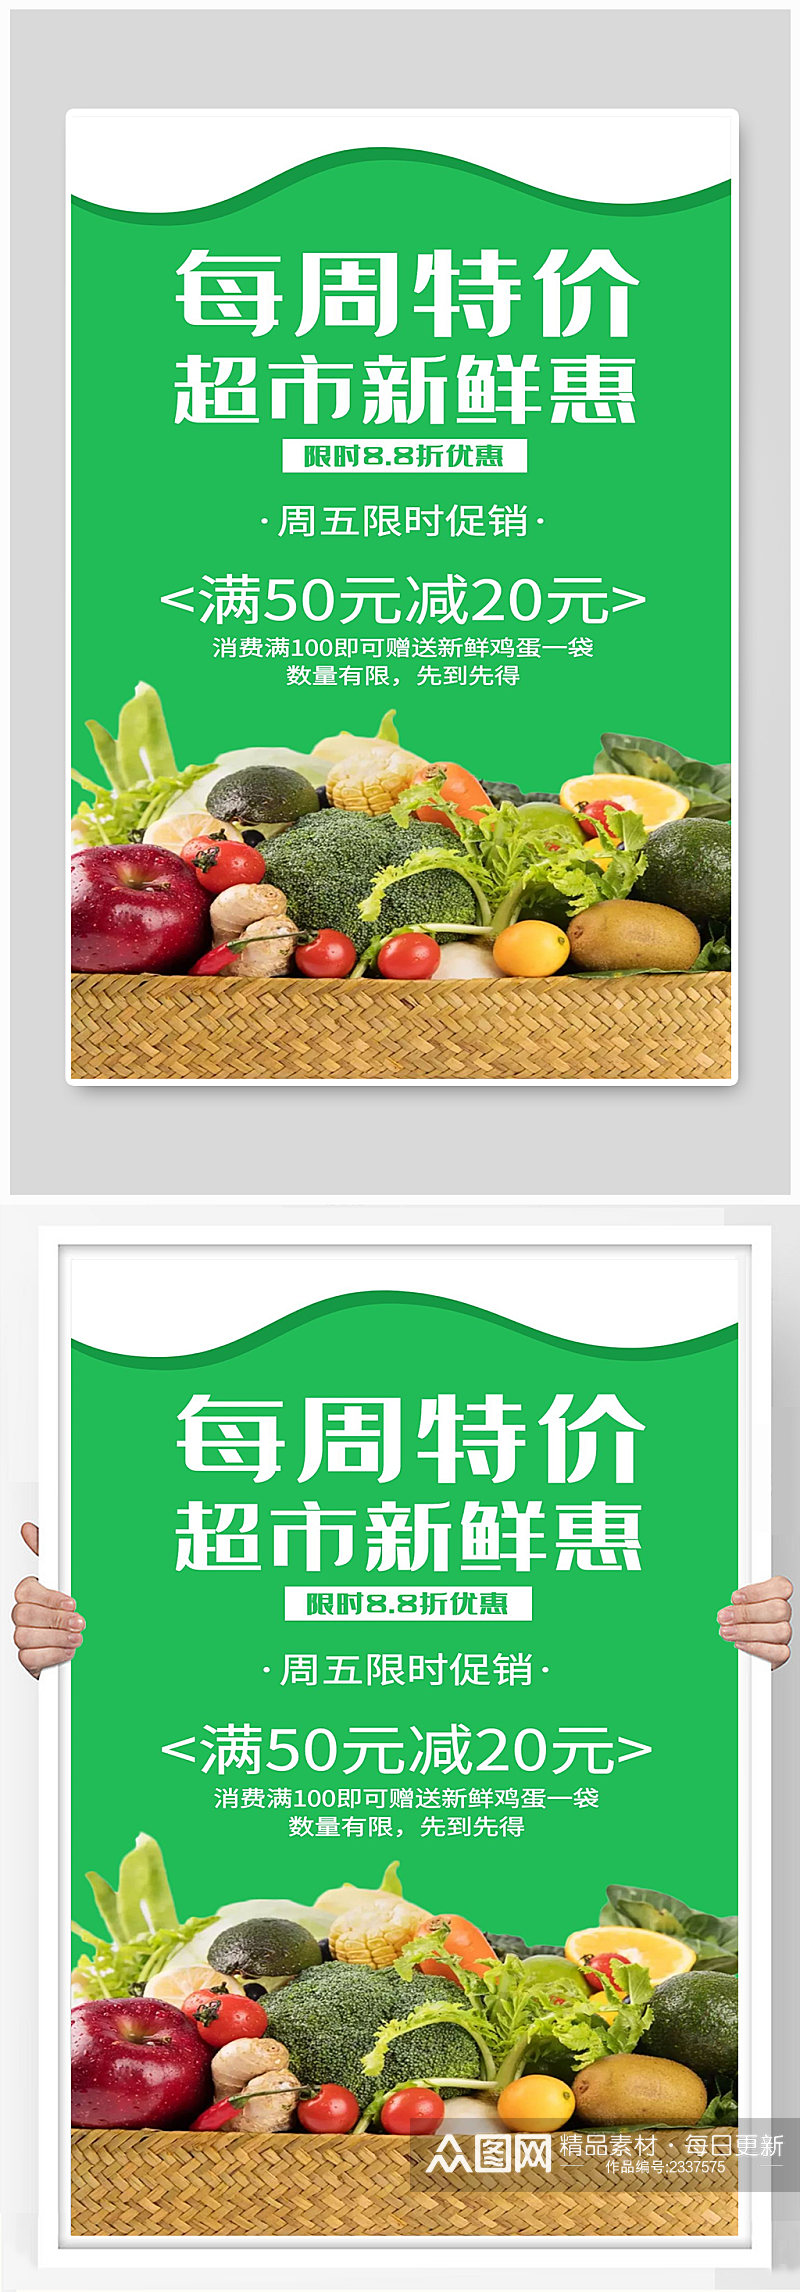 超市新鲜惠宣传海报素材